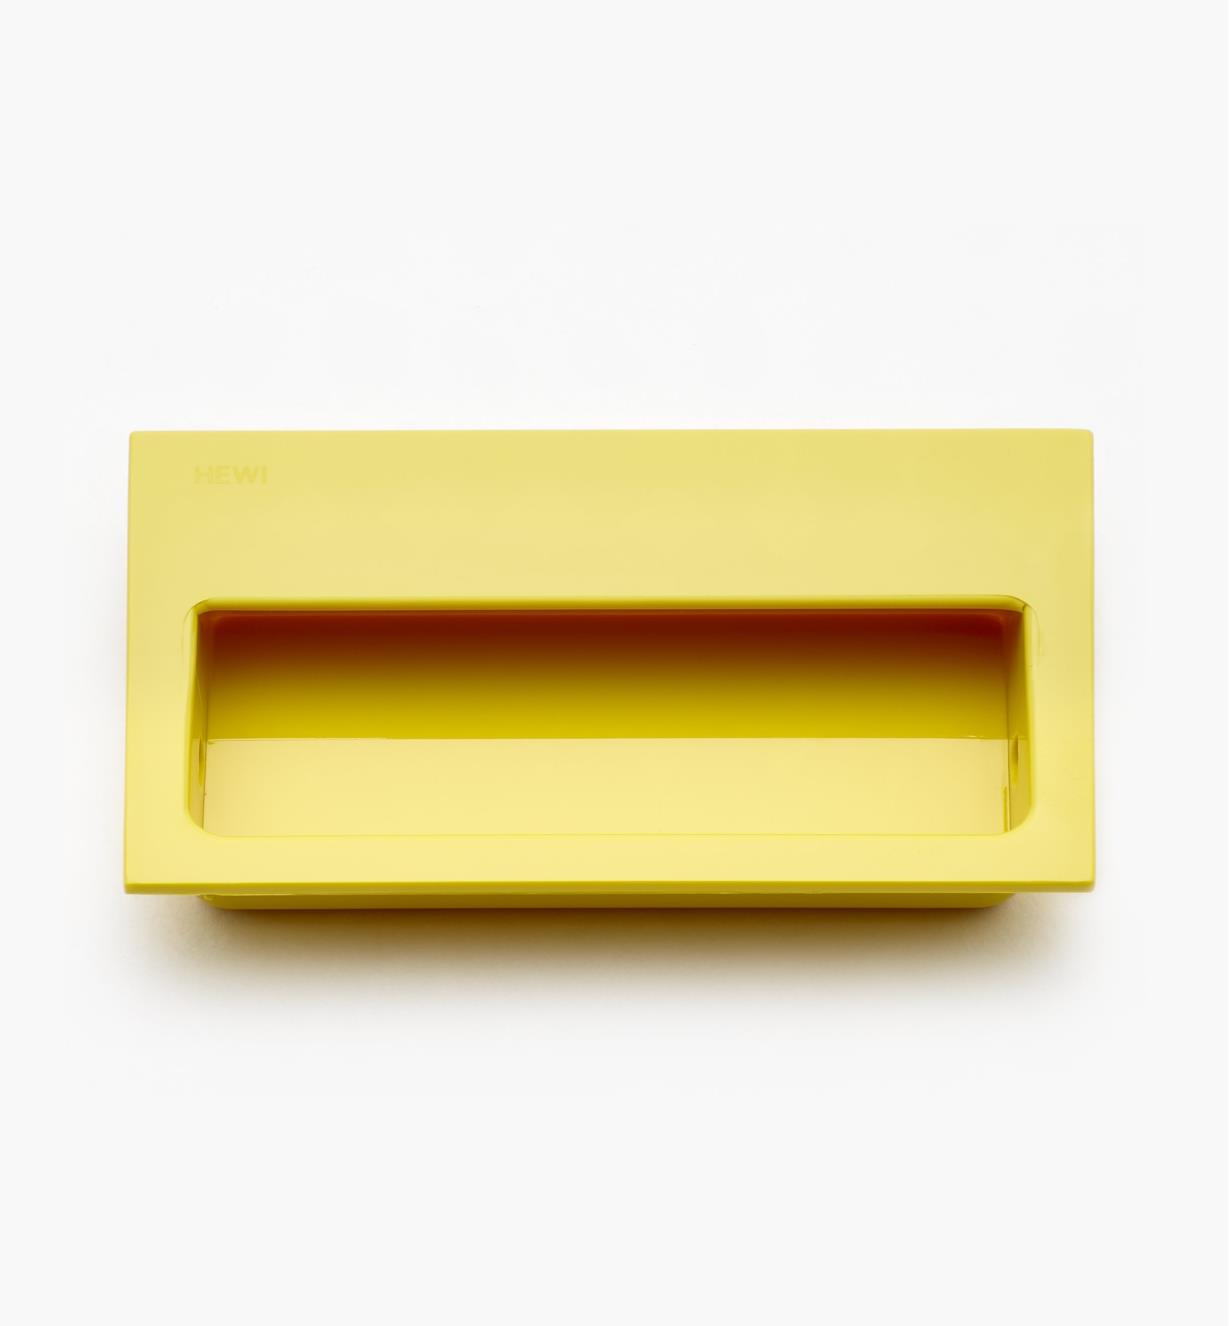 01W4107 - Poignée rectangulaire encastrée, jaune, 100 mm x 60 mm